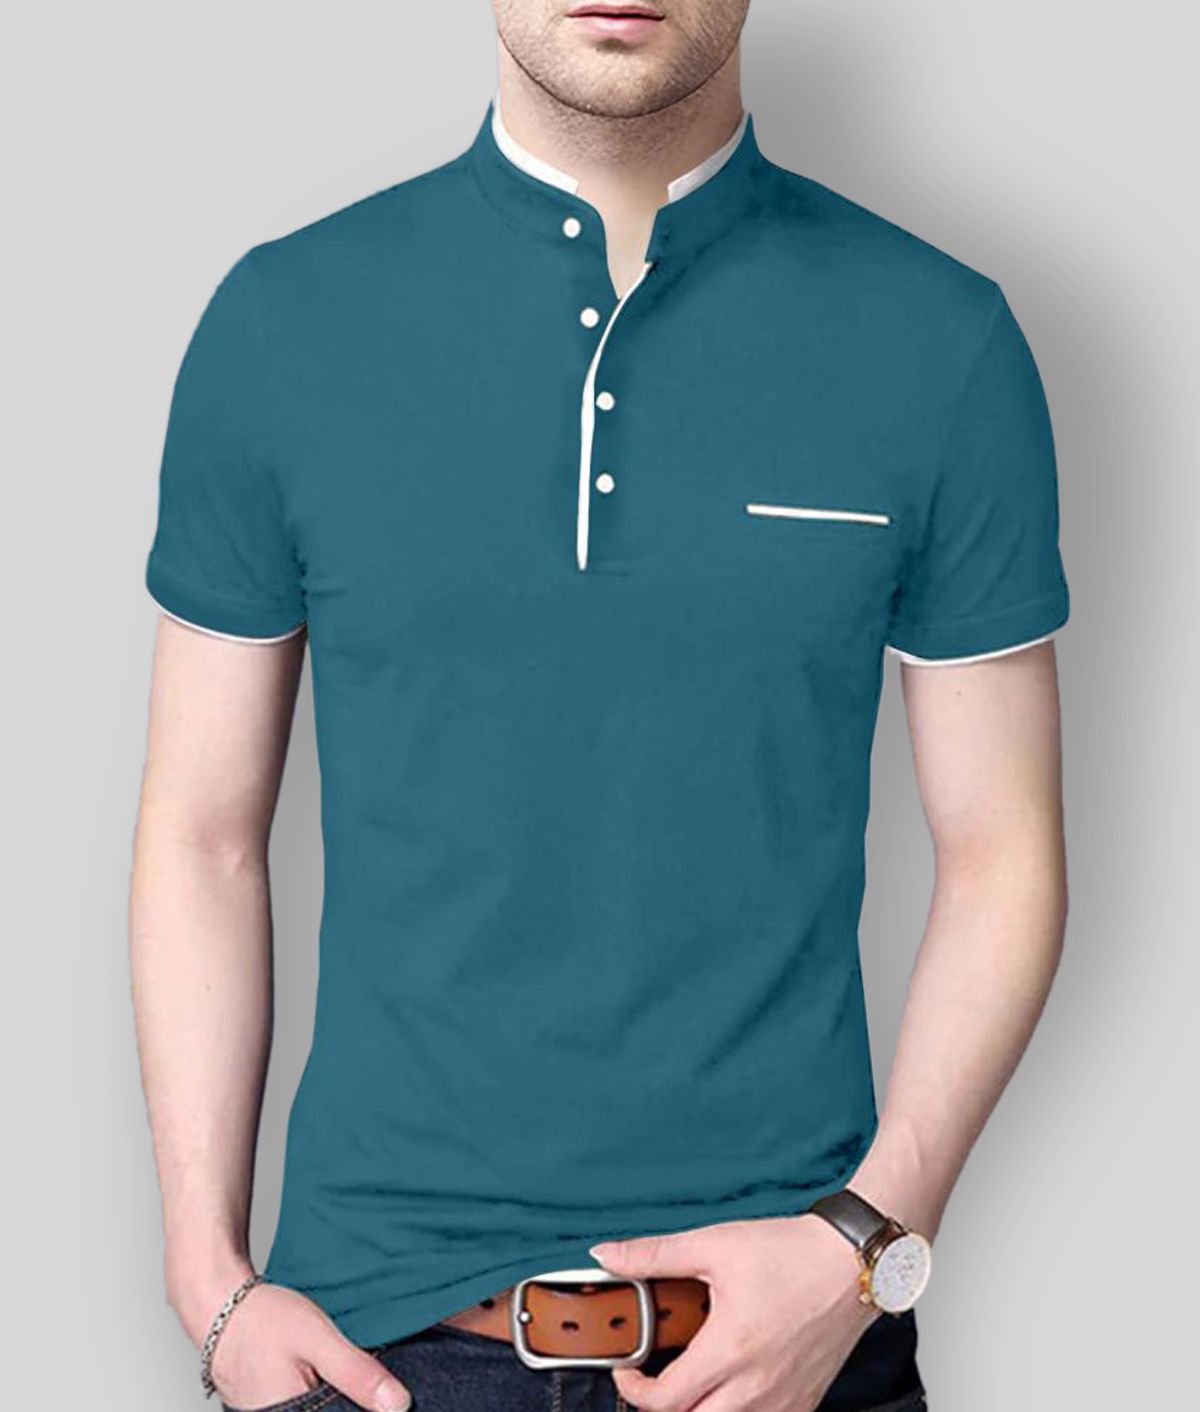 AUSK - Teal Blue Cotton Blend Regular Fit Men's T-Shirt ( Pack of 1 )